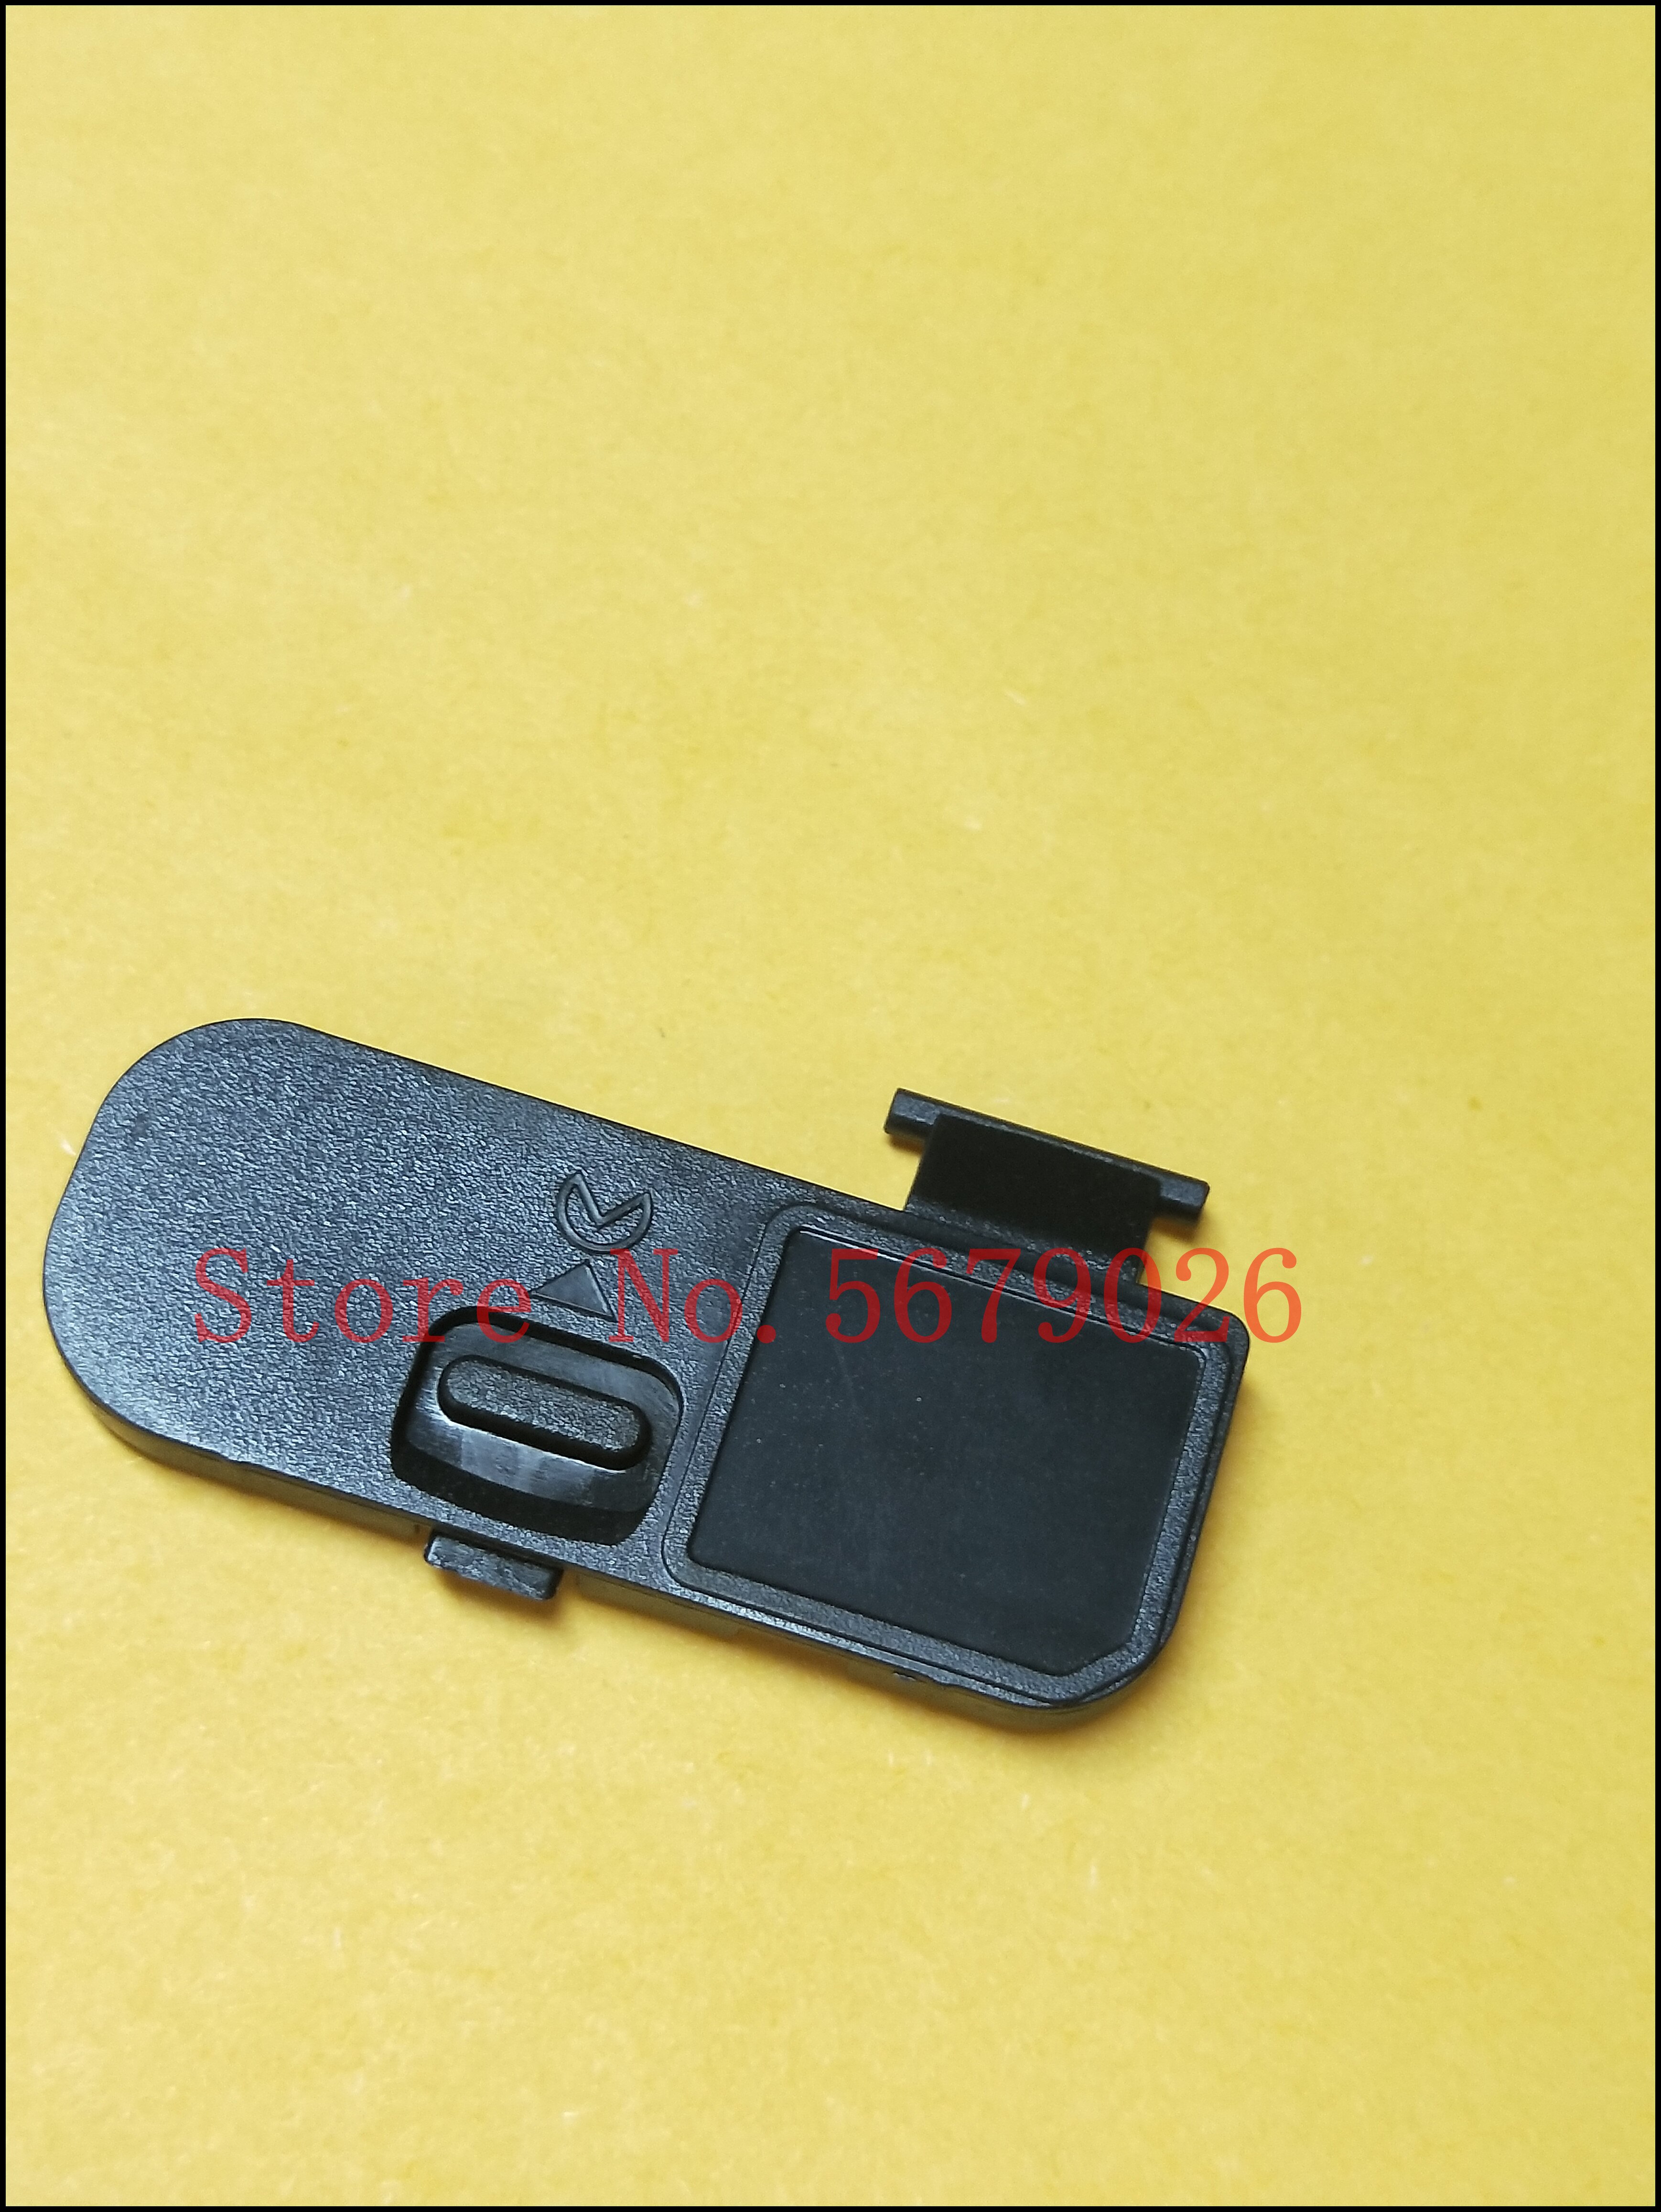 Pixco Battery Door Cover Repair Part Replacement Battery Lid Cap Suit for Nikon D5500 D5600 Digital Camera Repair